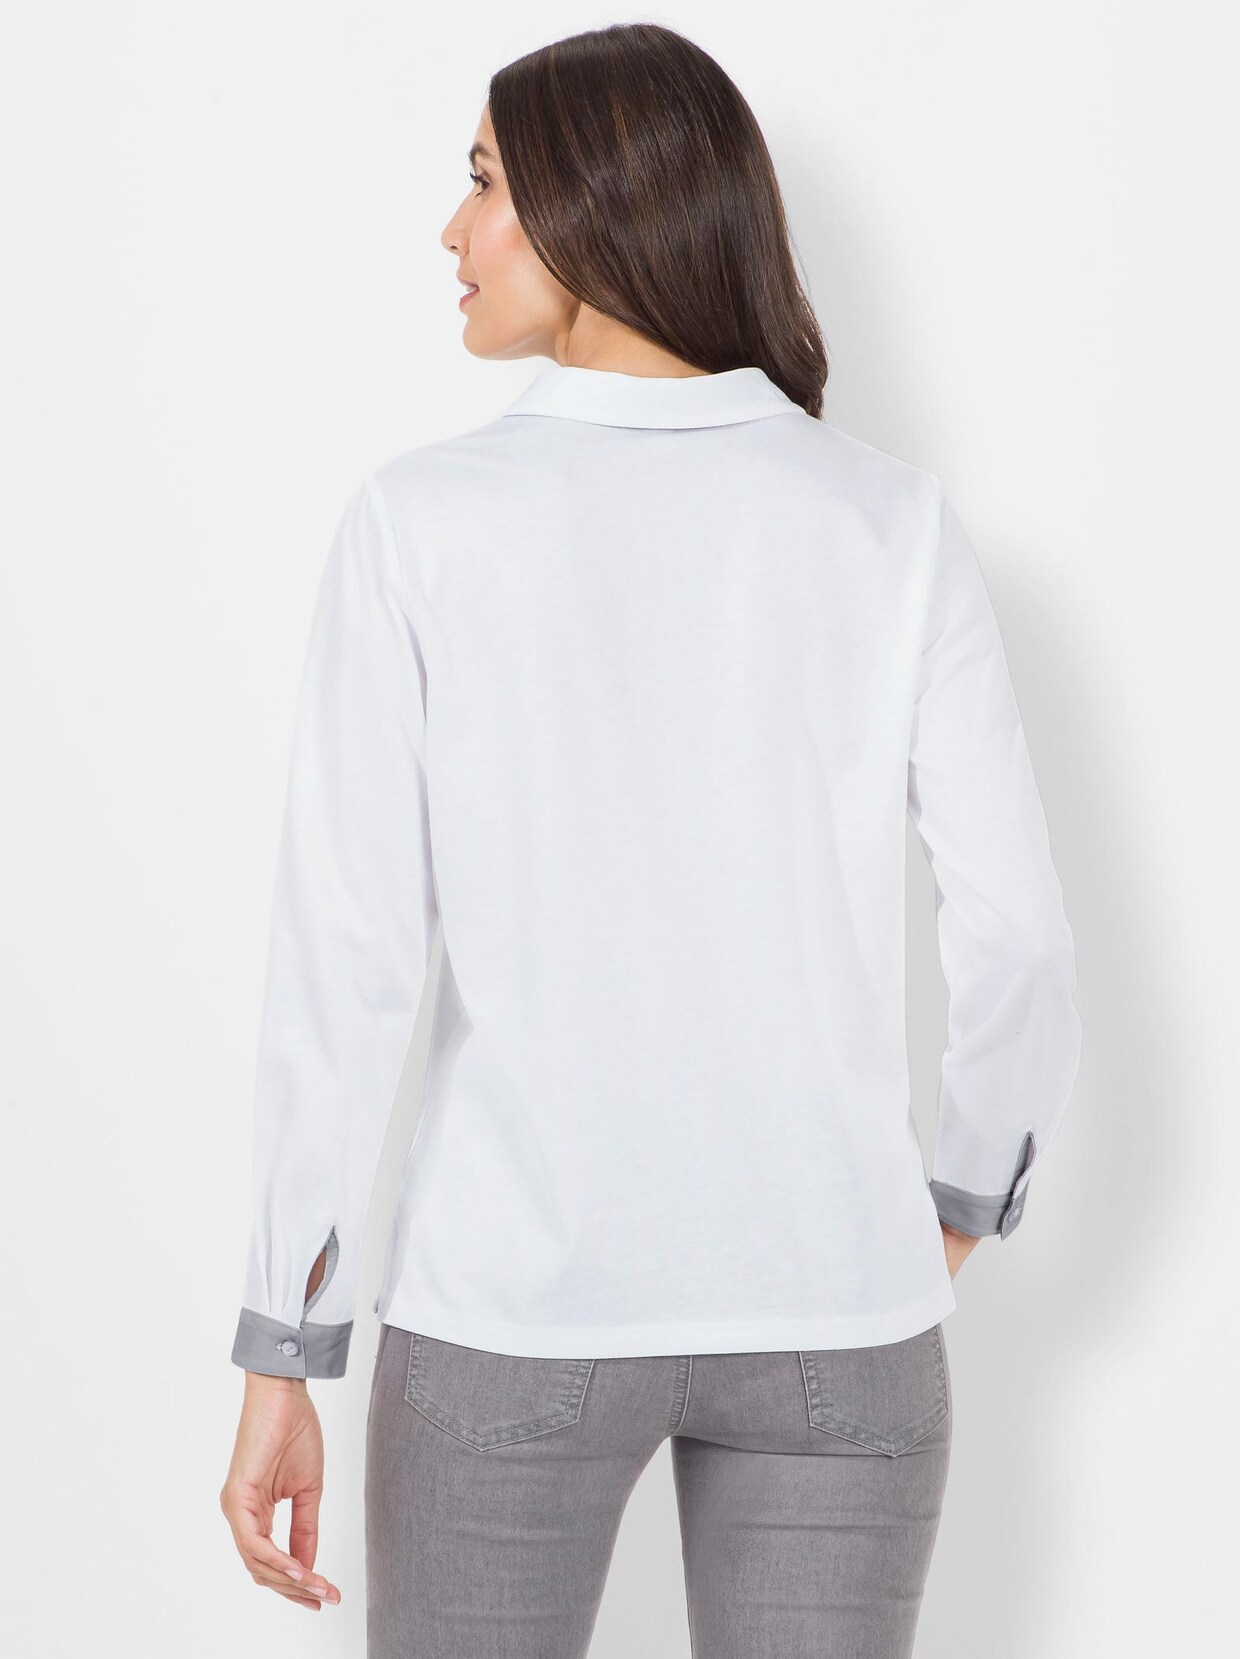 Poloshirt - weiß-grau-bedruckt